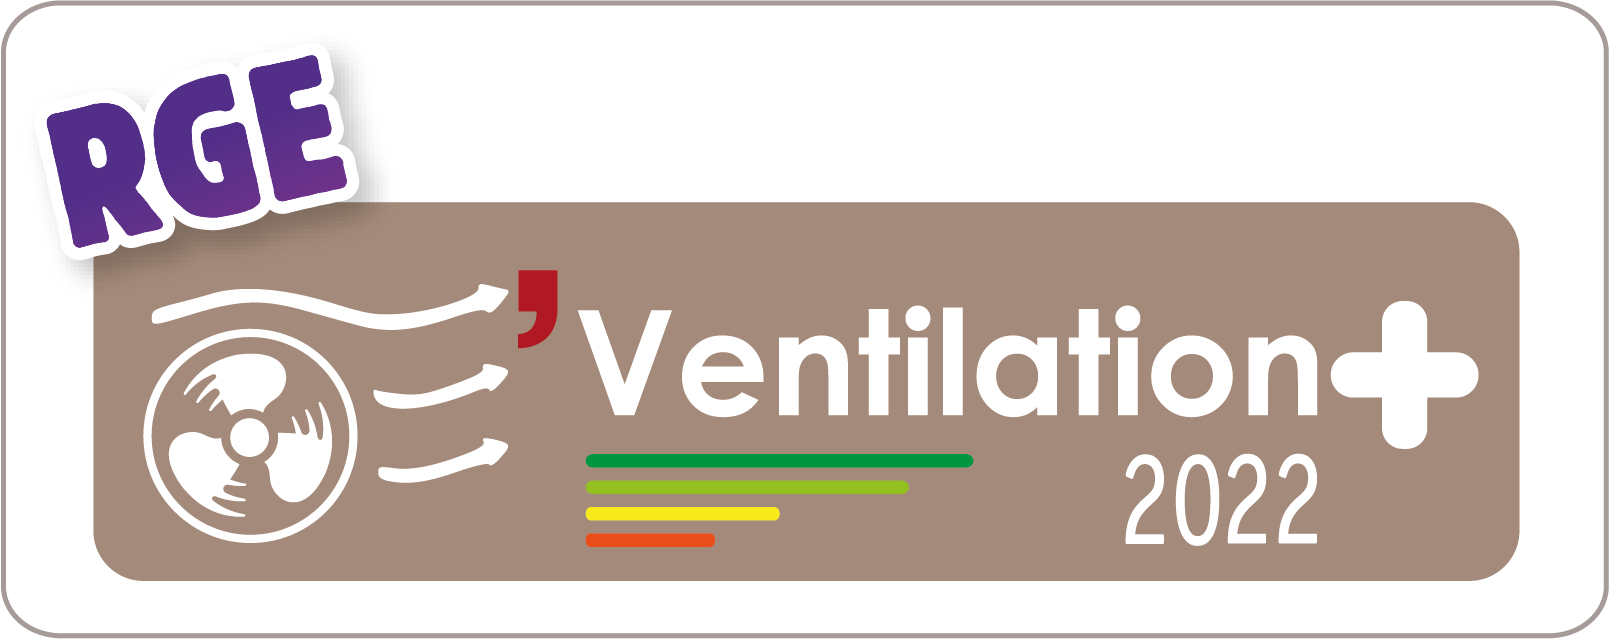 logo_Ventillation_2022_RGE-bj-energies.png